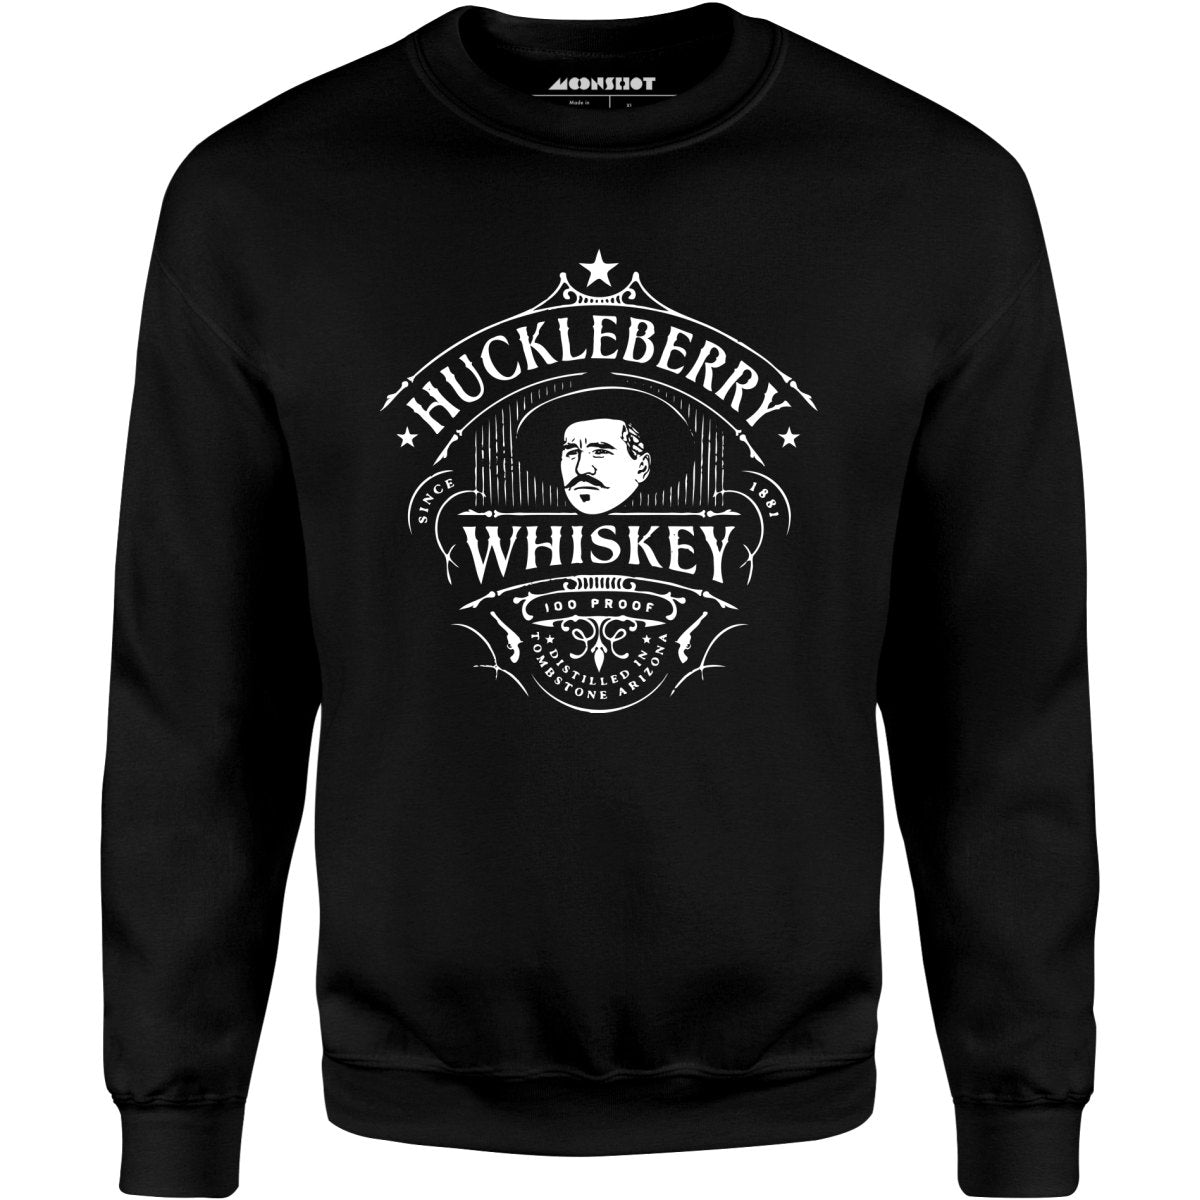 Huckleberry Whiskey - Unisex Sweatshirt